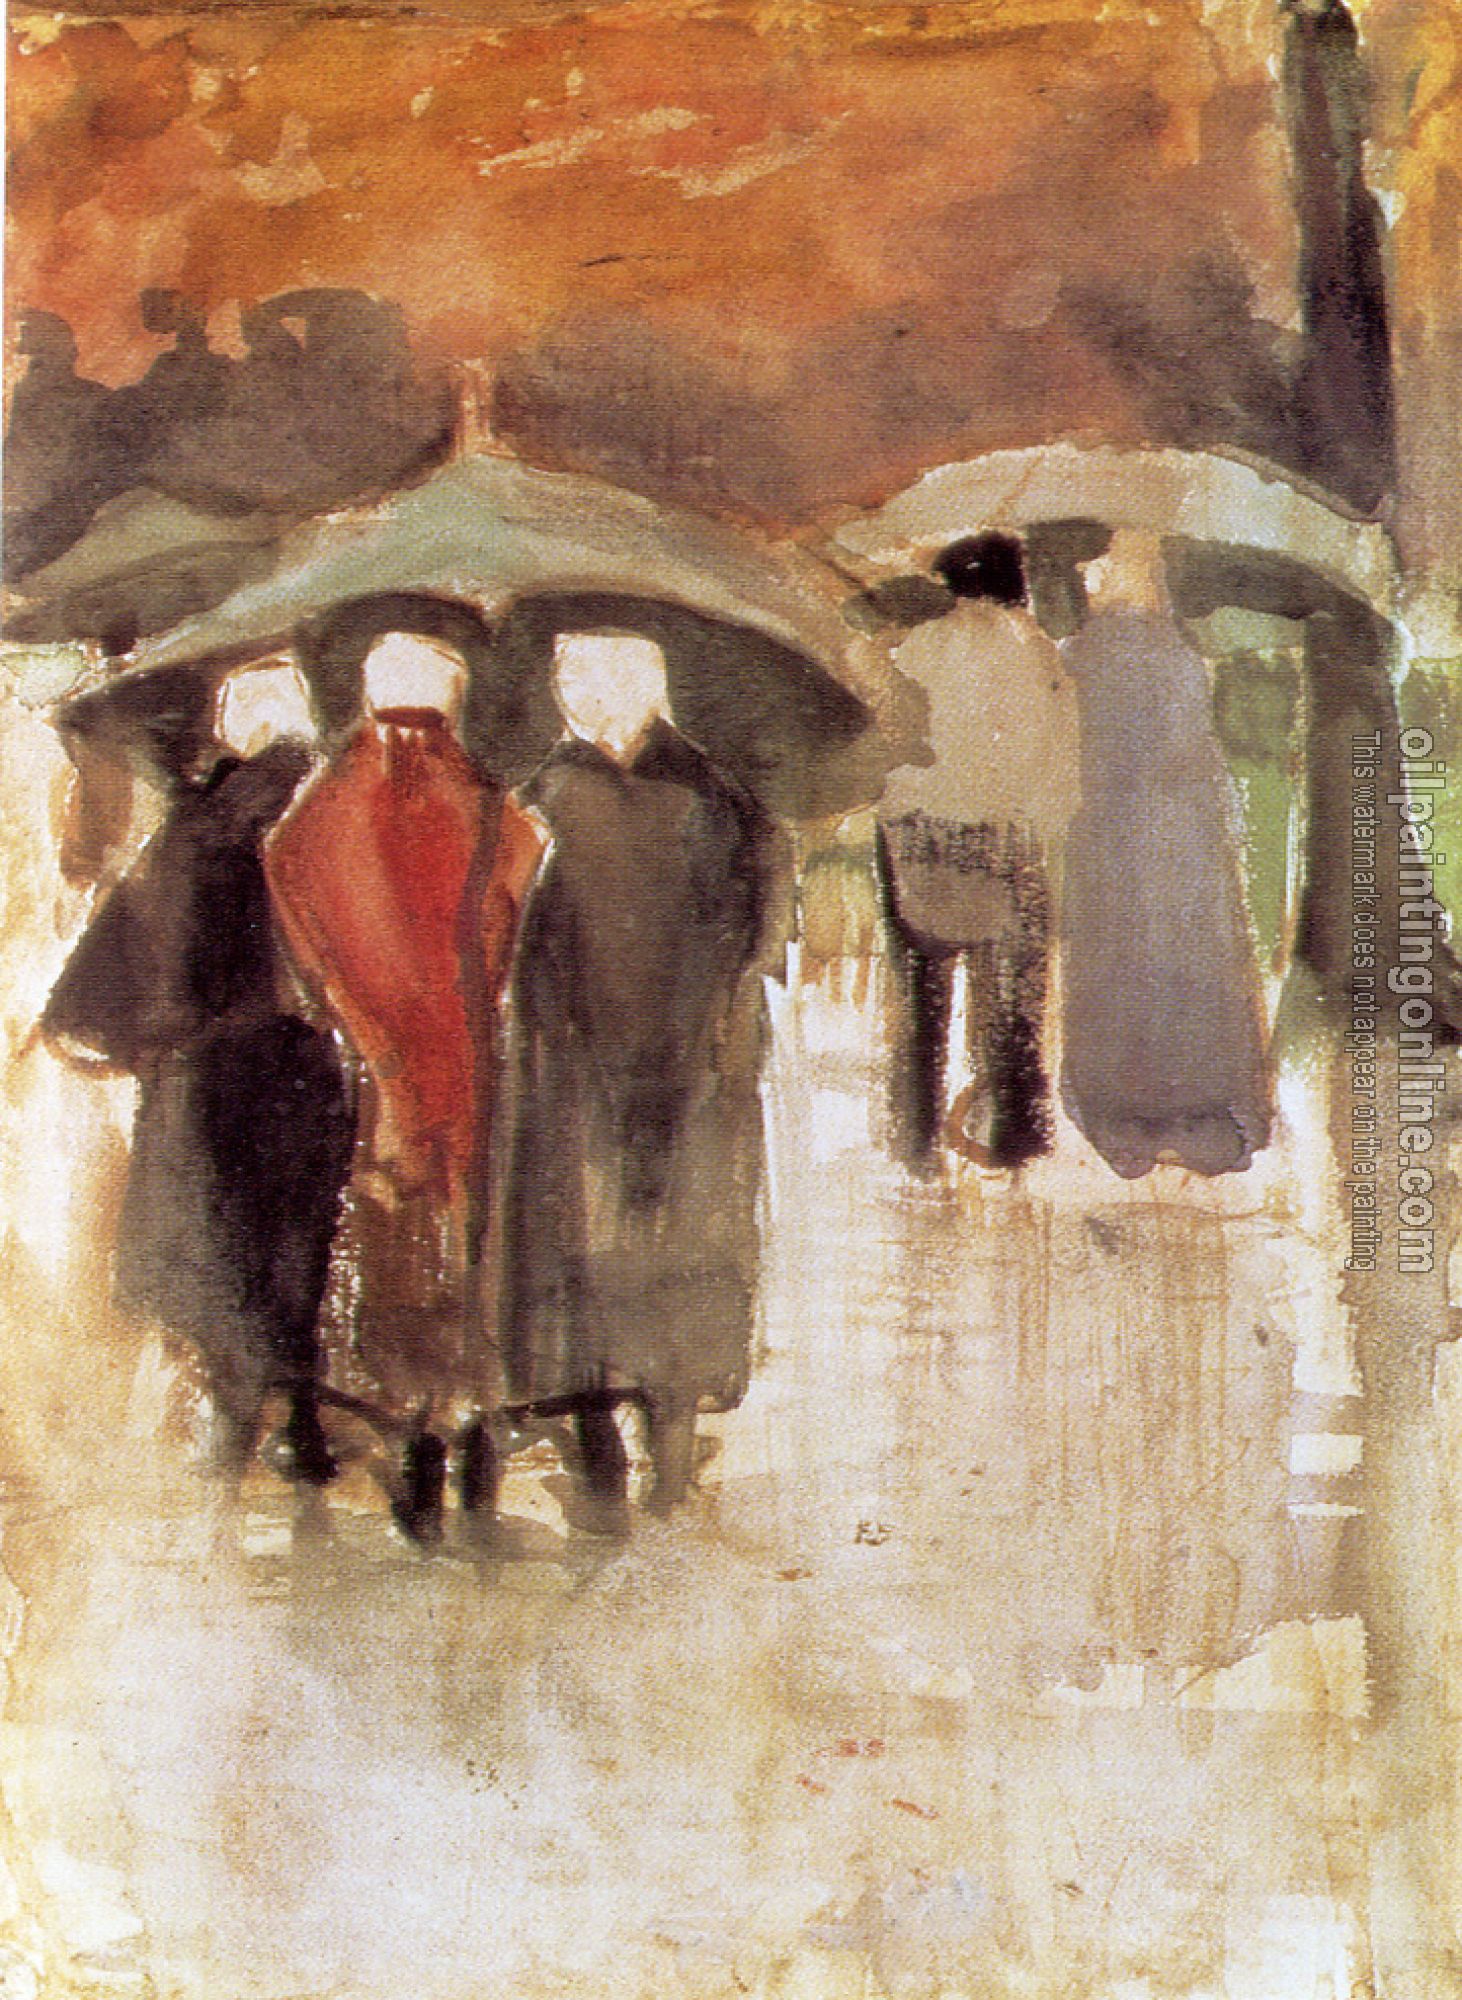 Gogh, Vincent van - Scheveningen women and other people under umbrellas